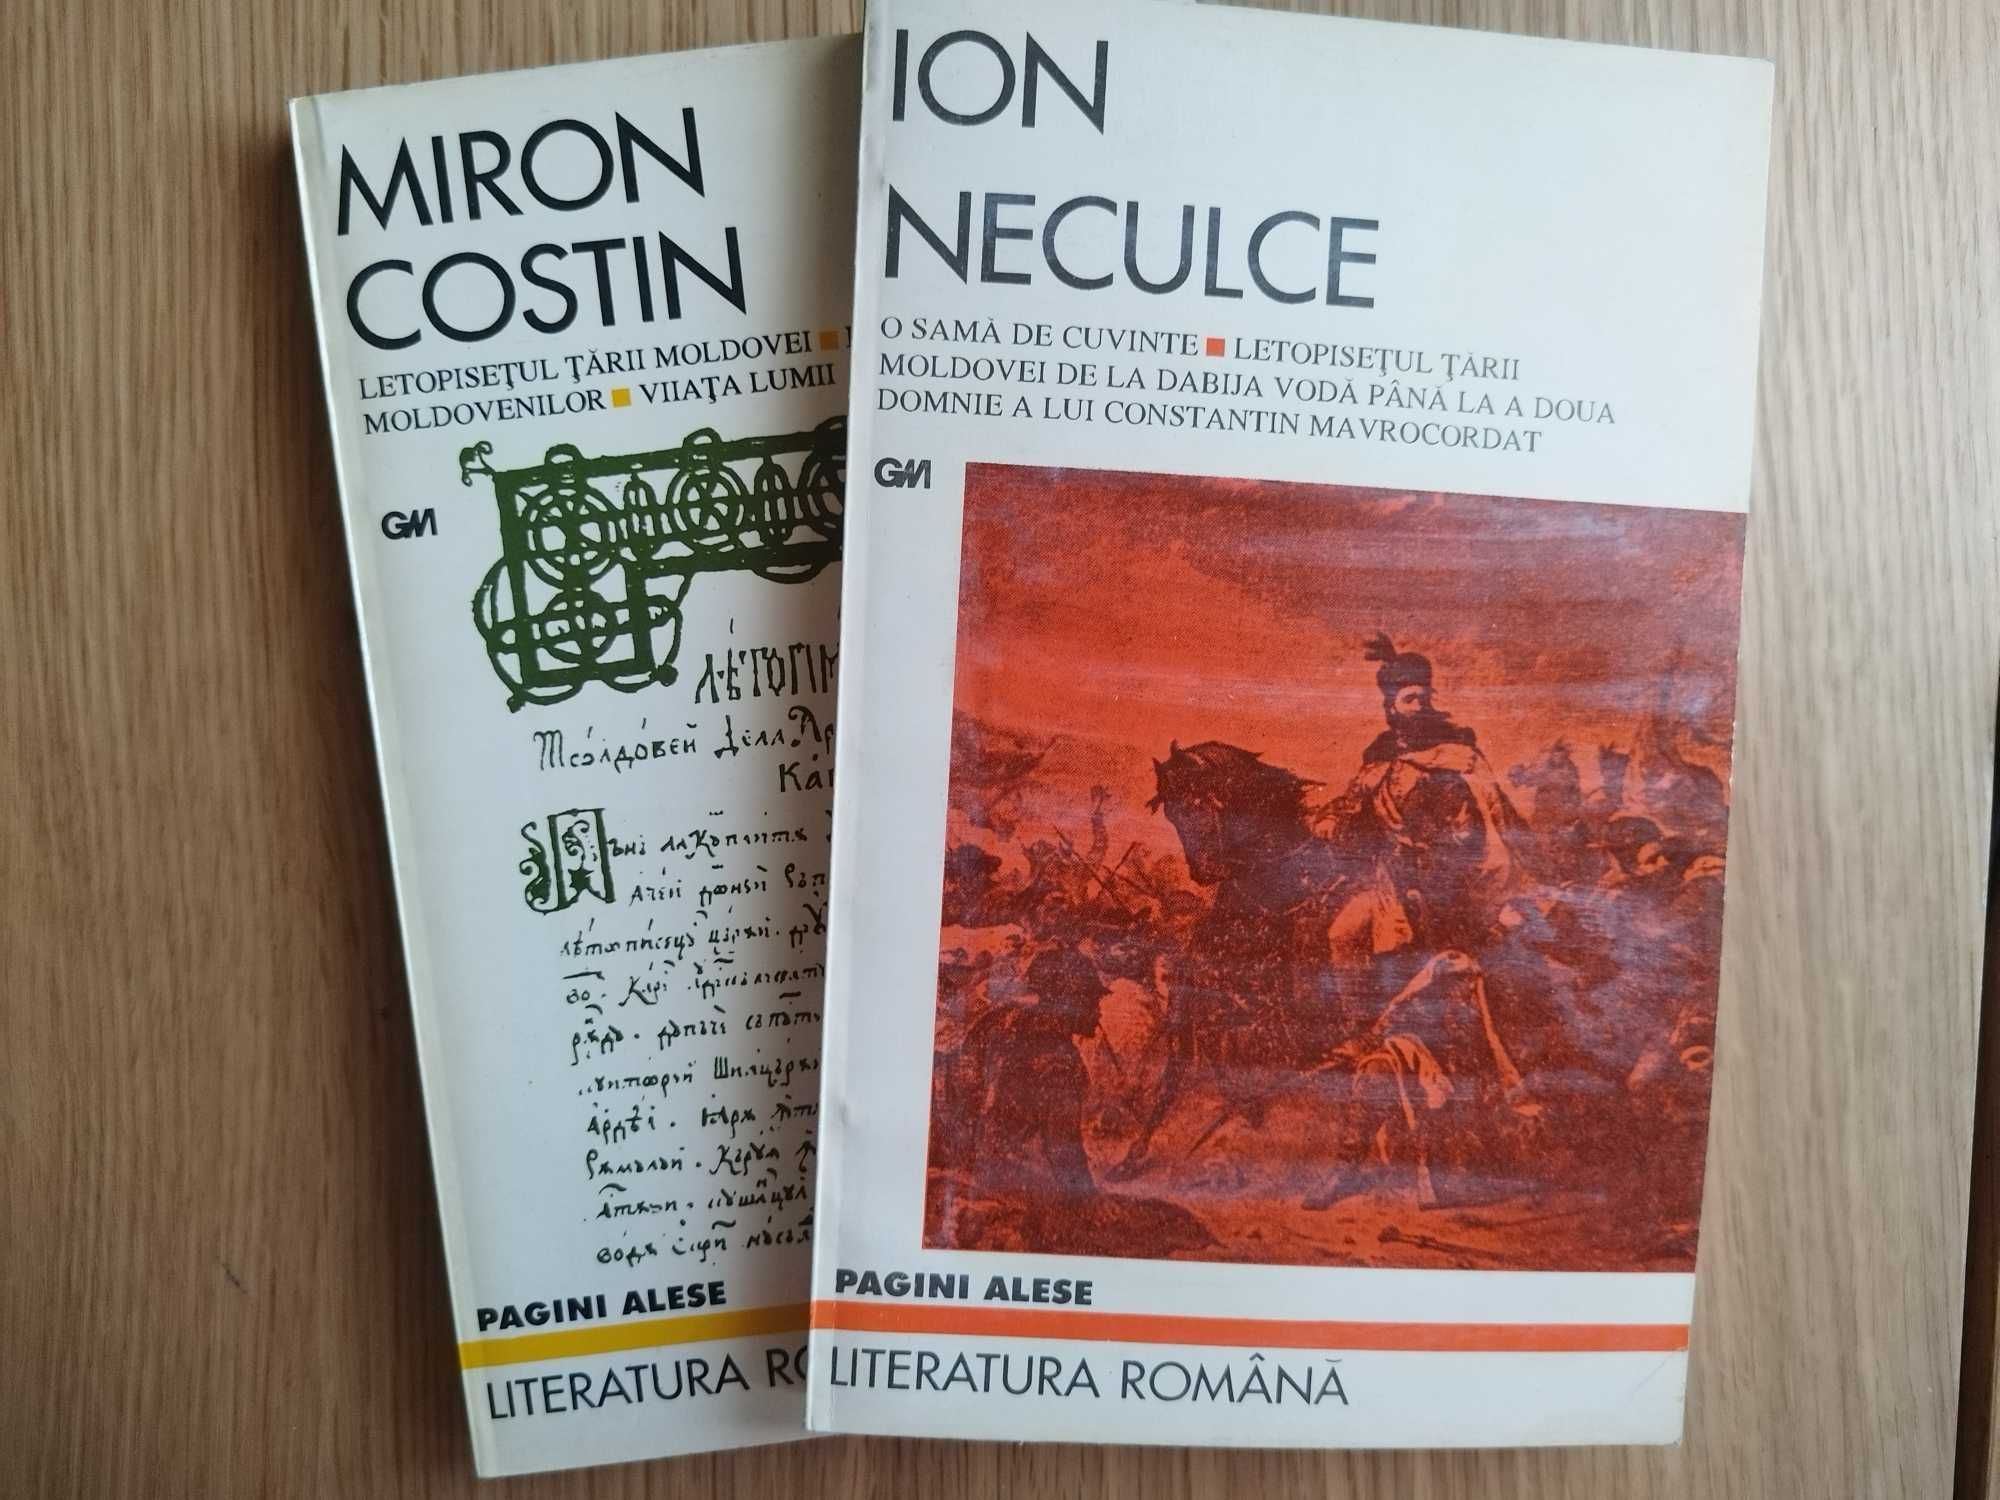 Miron Costin, Letopisețul Țării Mold./Ion Neculce, O samă de cuvinte